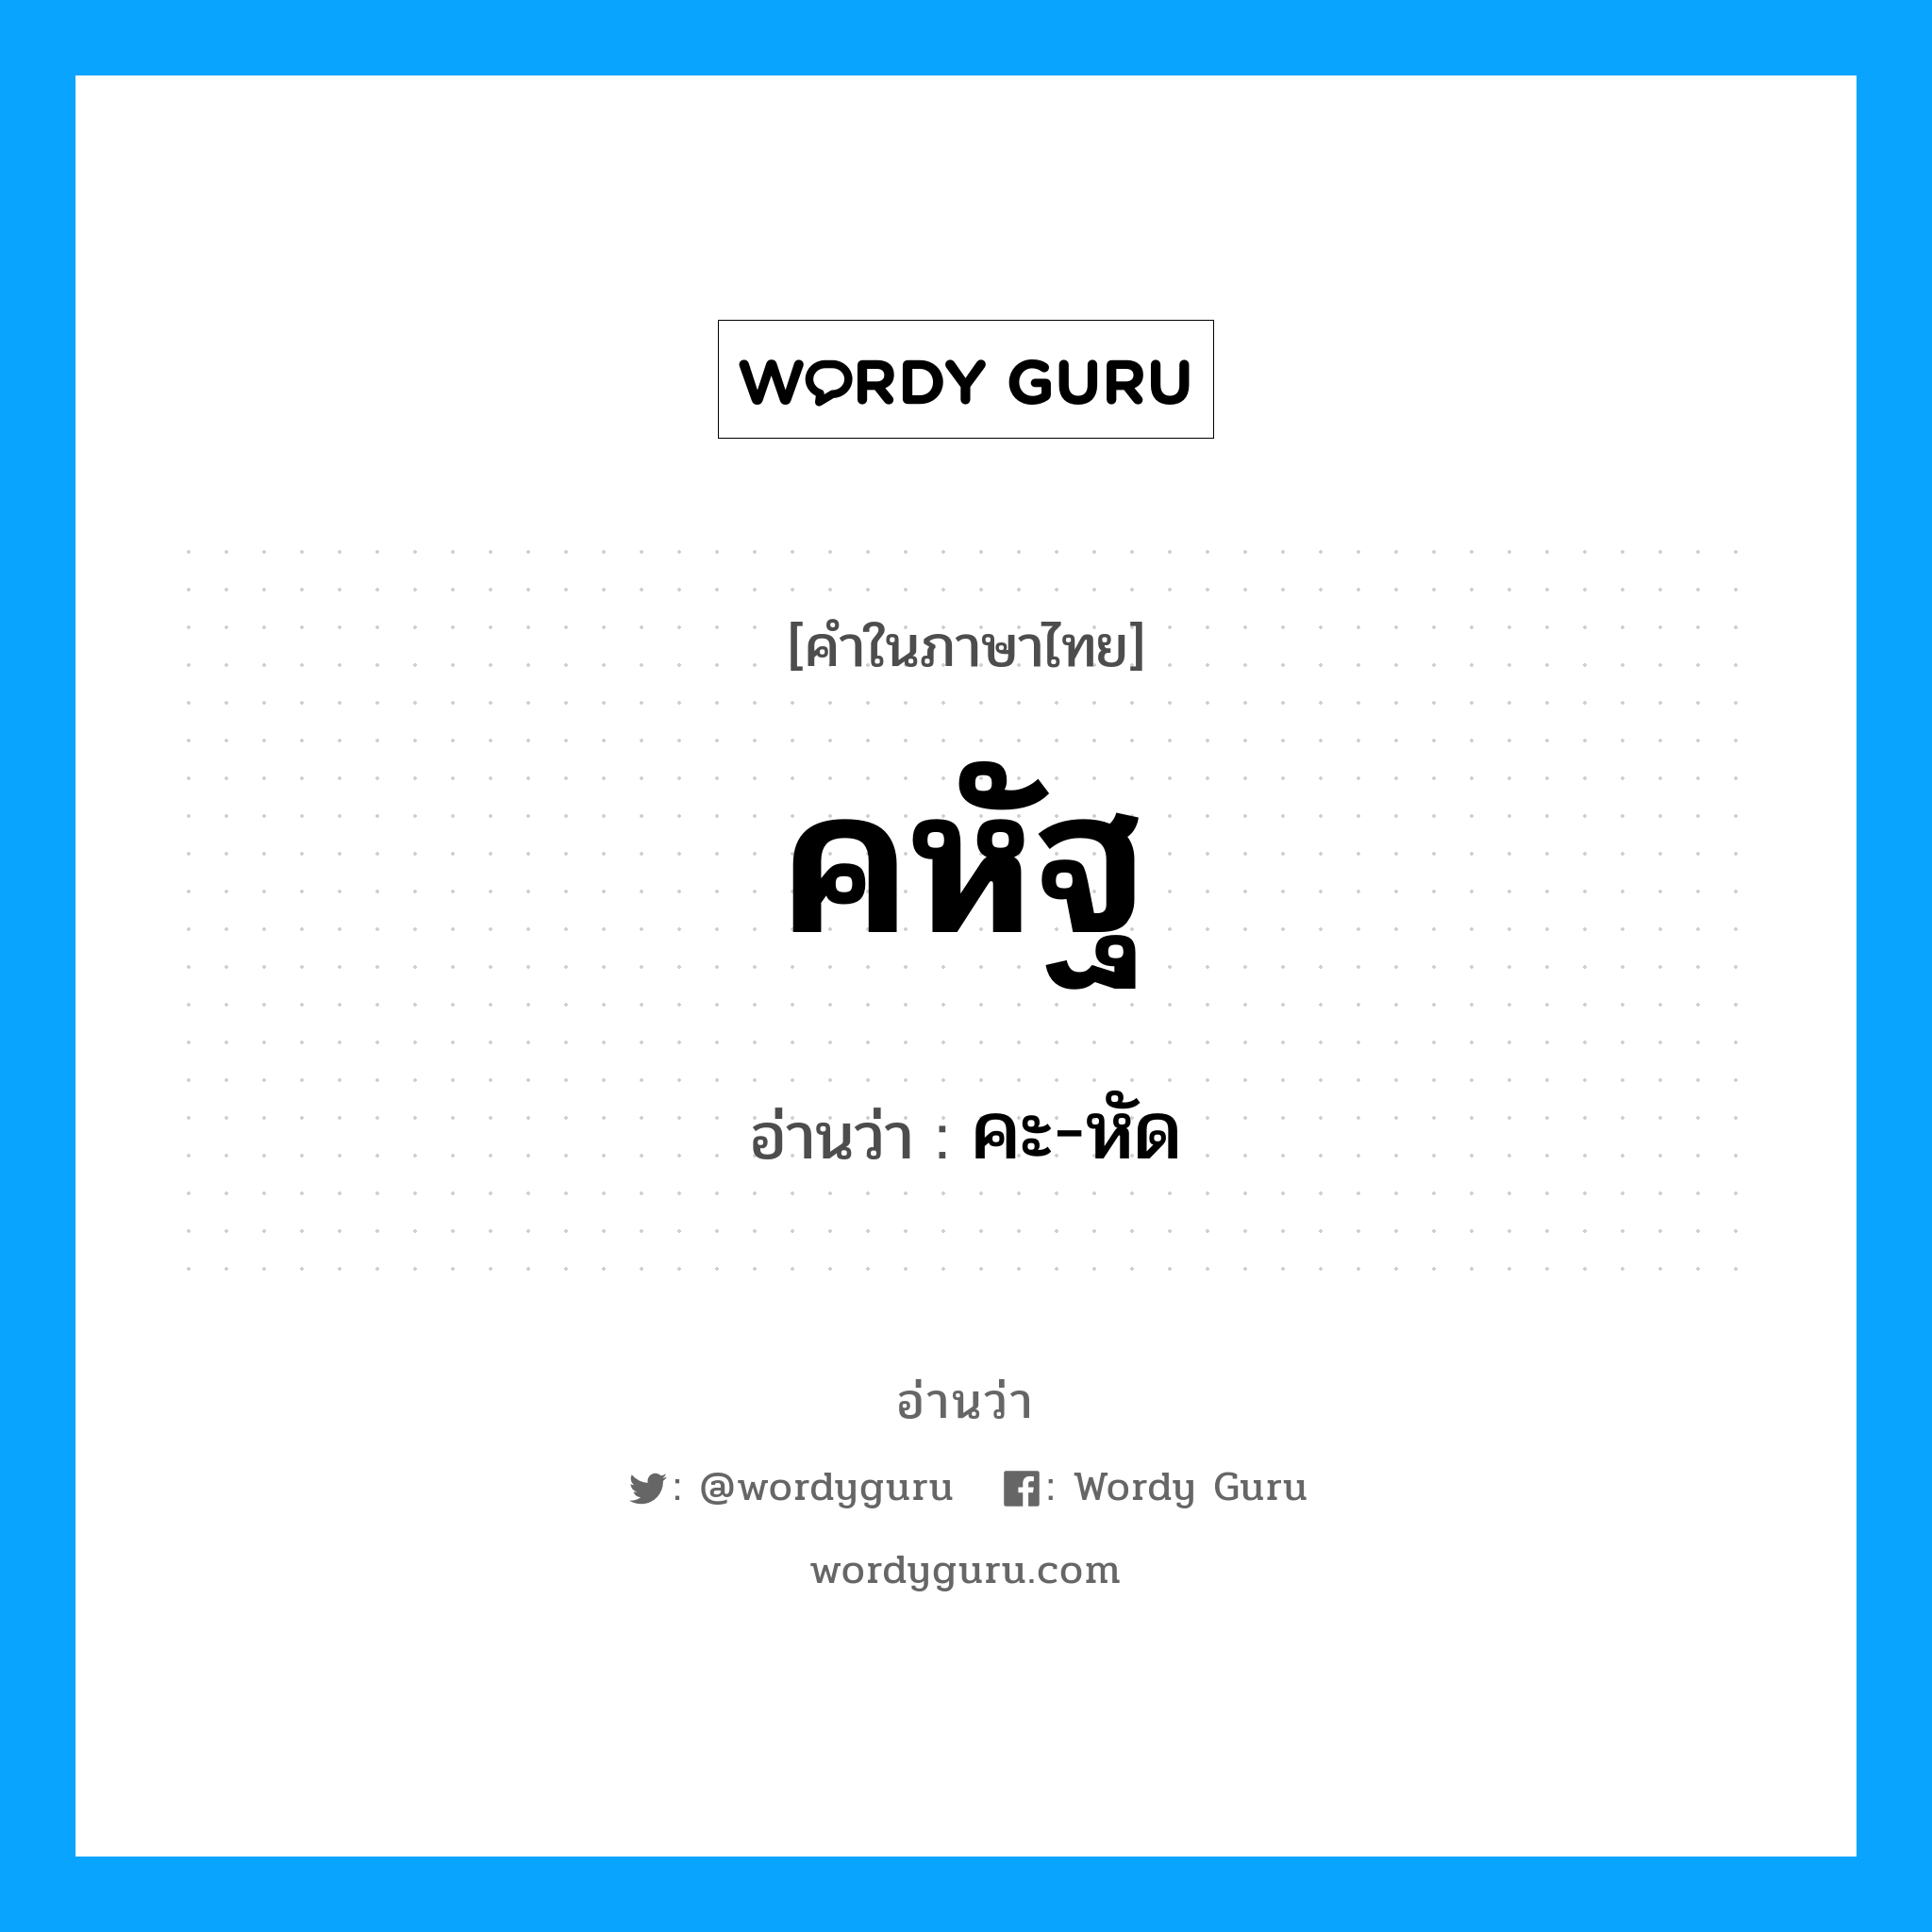 คะ-หัด เป็นคำอ่านของคำไหน?, คำในภาษาไทย คะ-หัด อ่านว่า คหัฐ